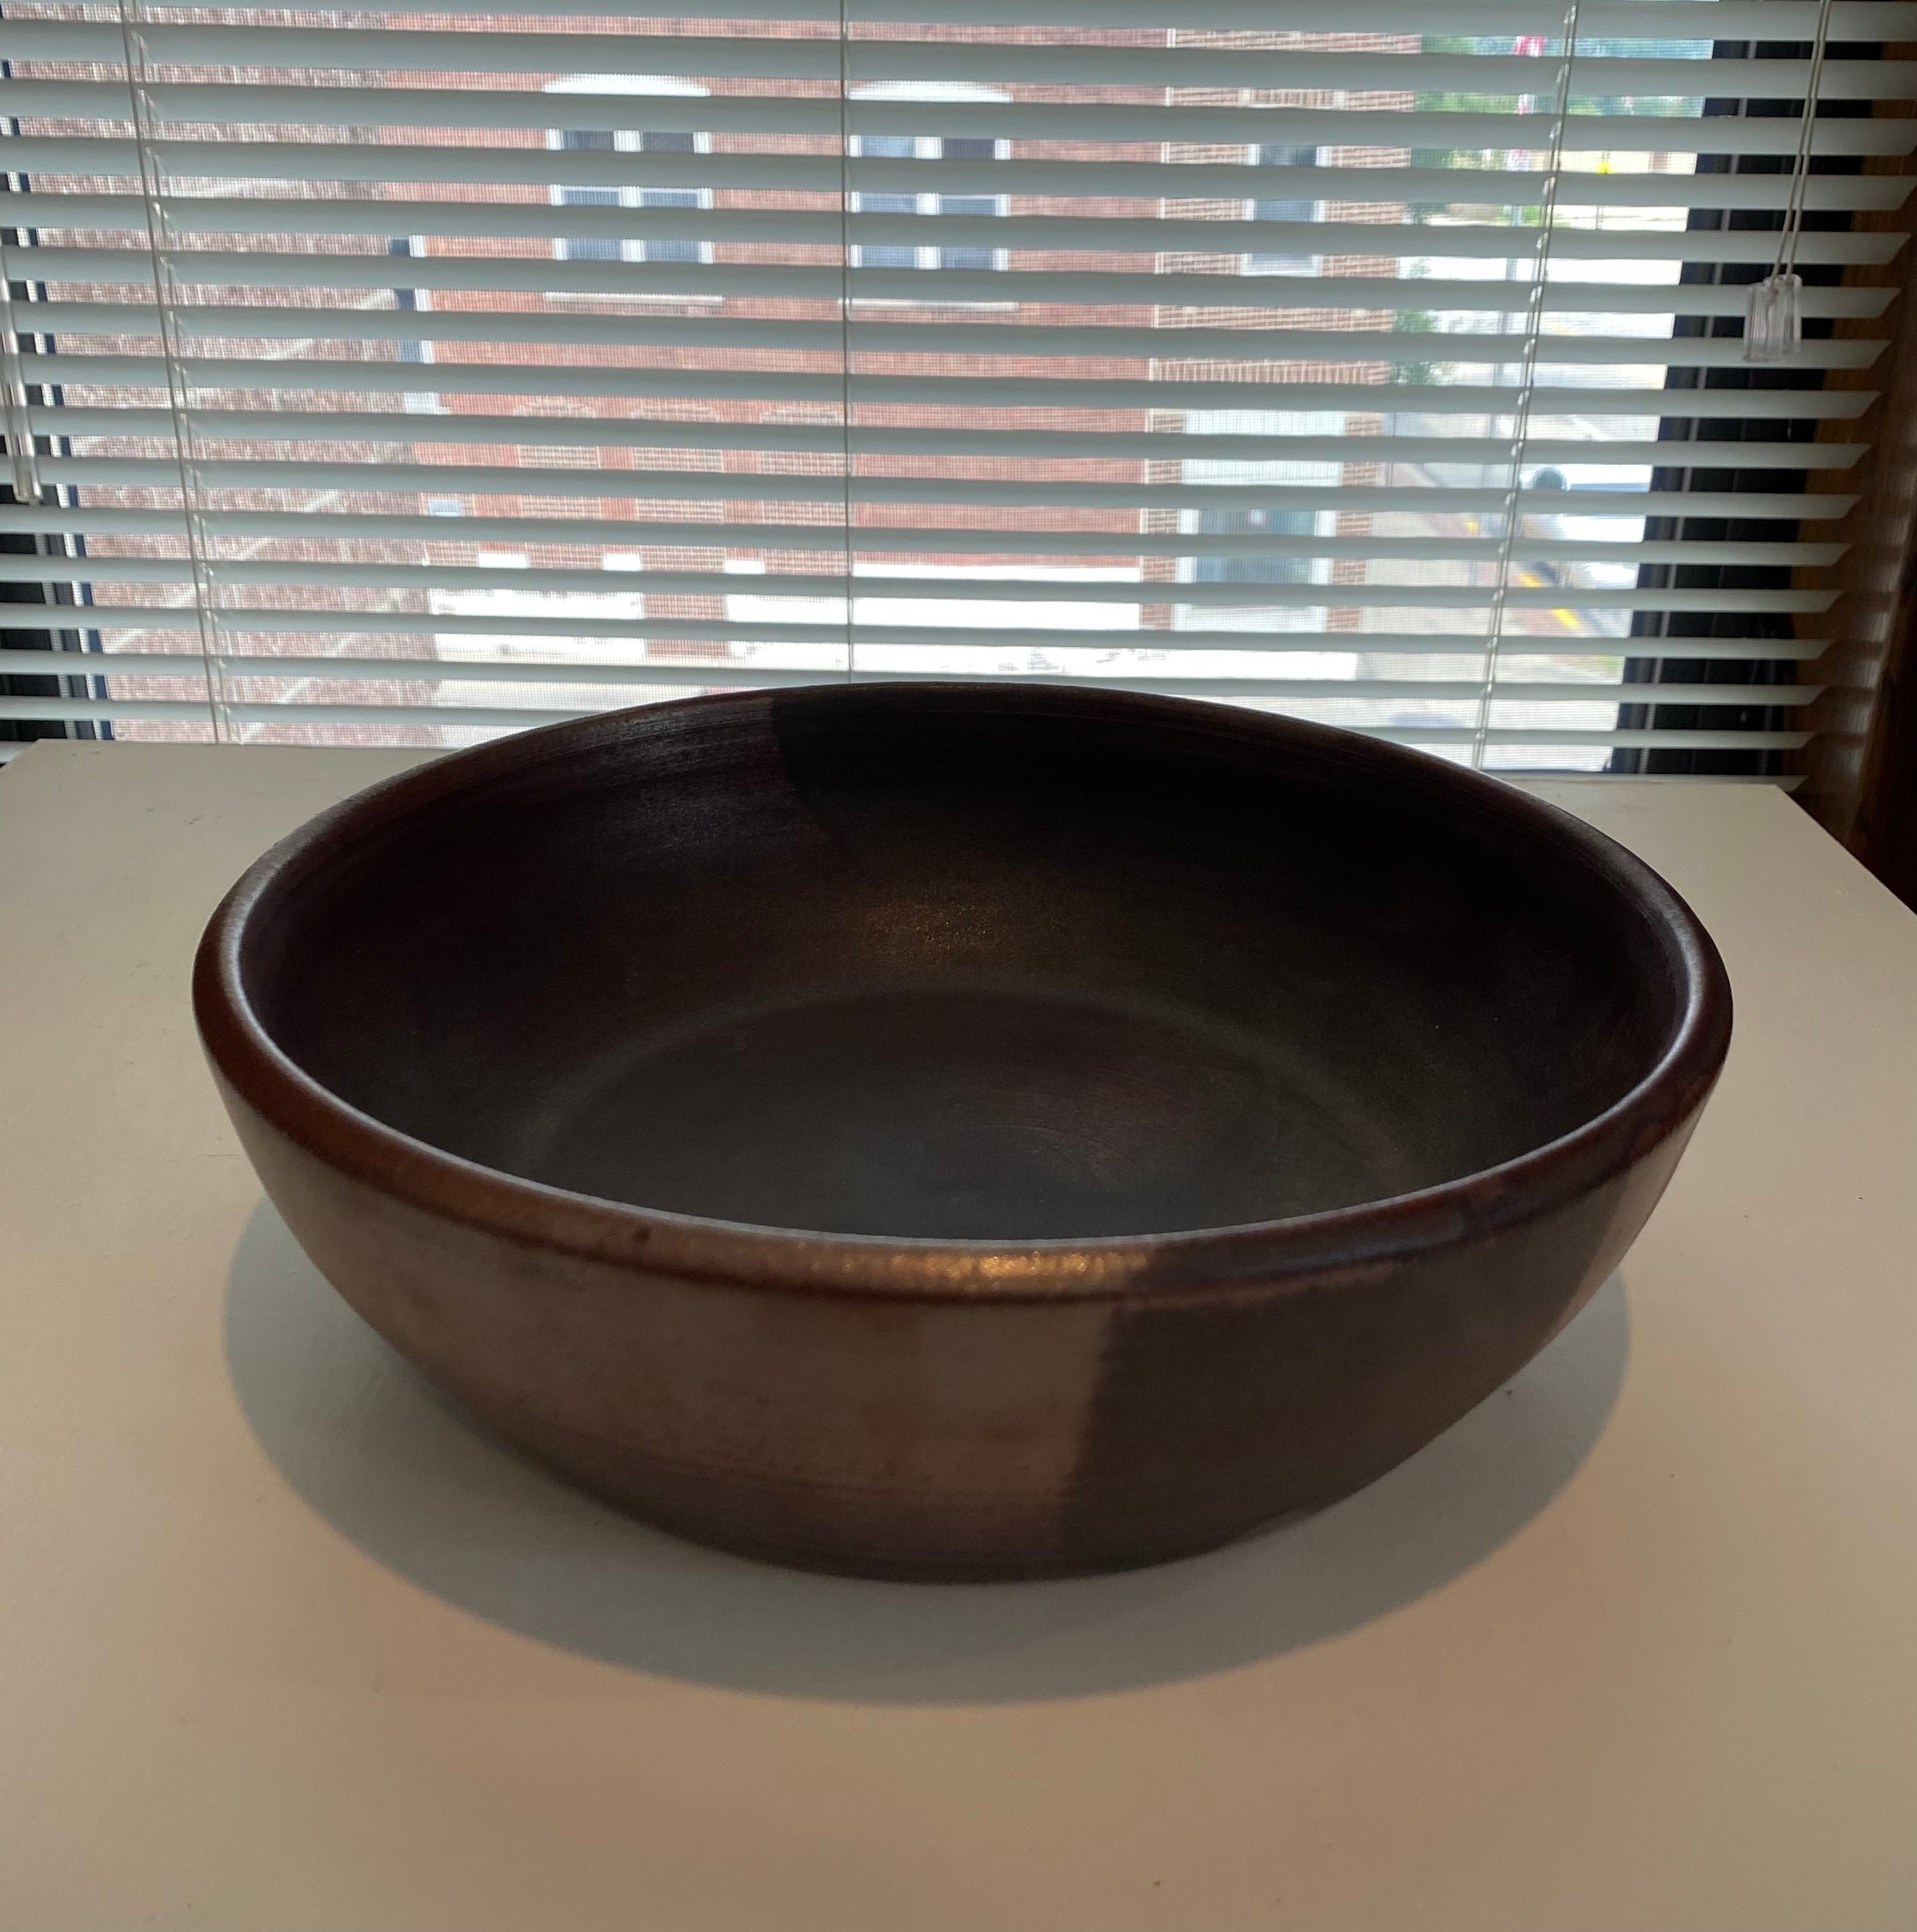 Bowl
Flameware Ceramic
11" x 3.25"
$75.